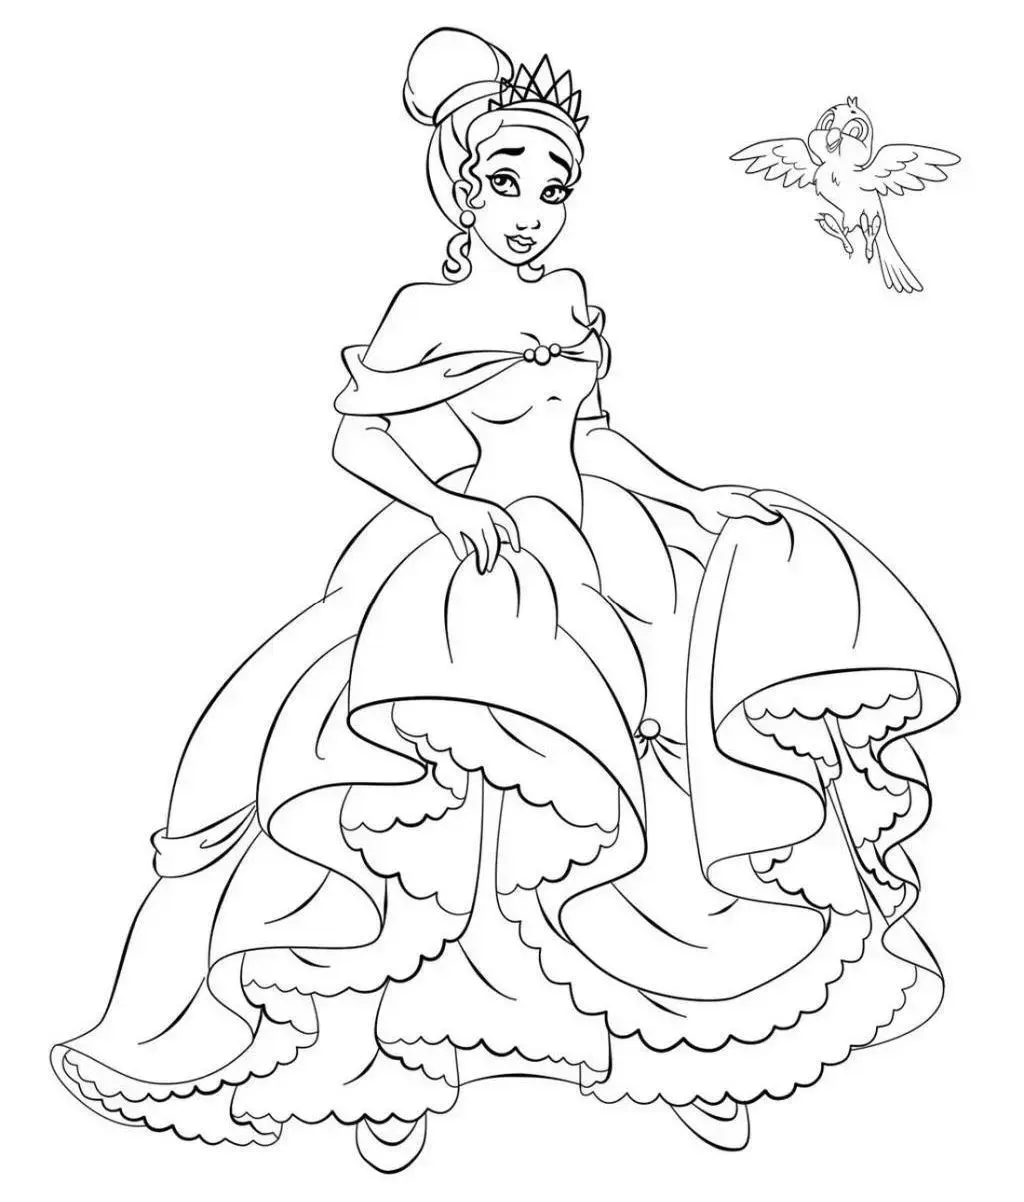 Tiana princess coloring